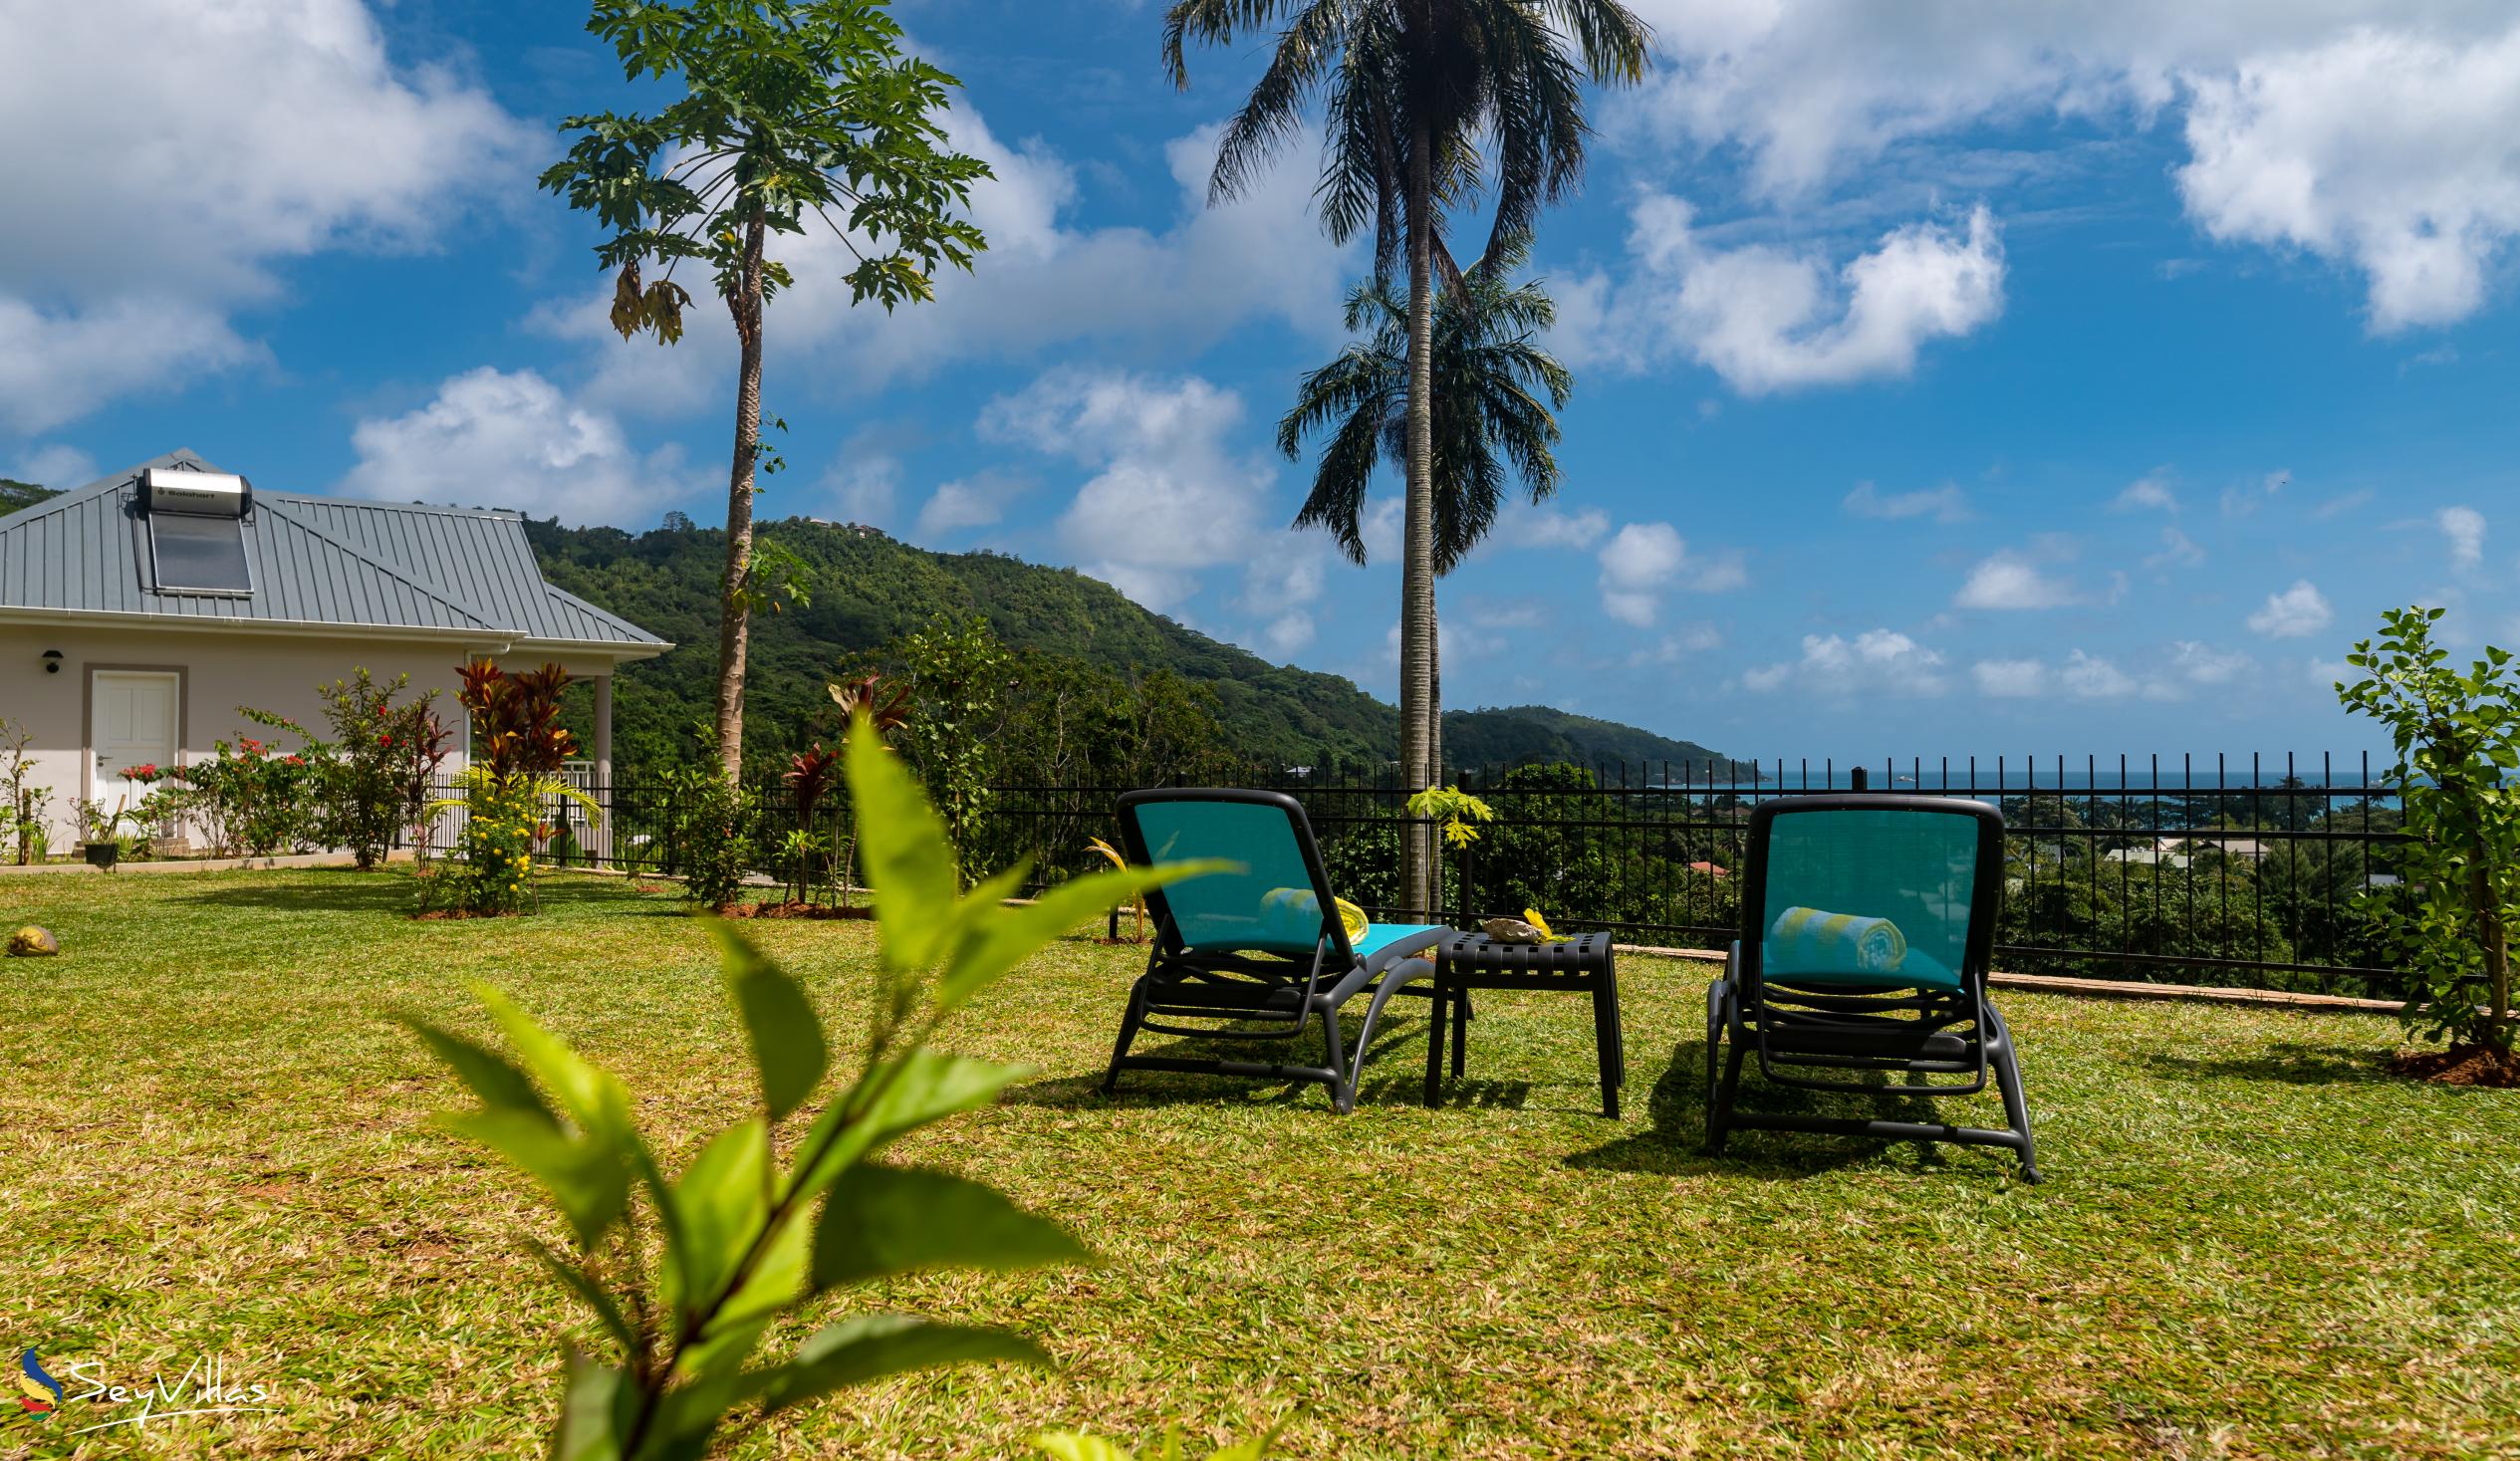 Photo 4: La Trouvaille - Outdoor area - Mahé (Seychelles)